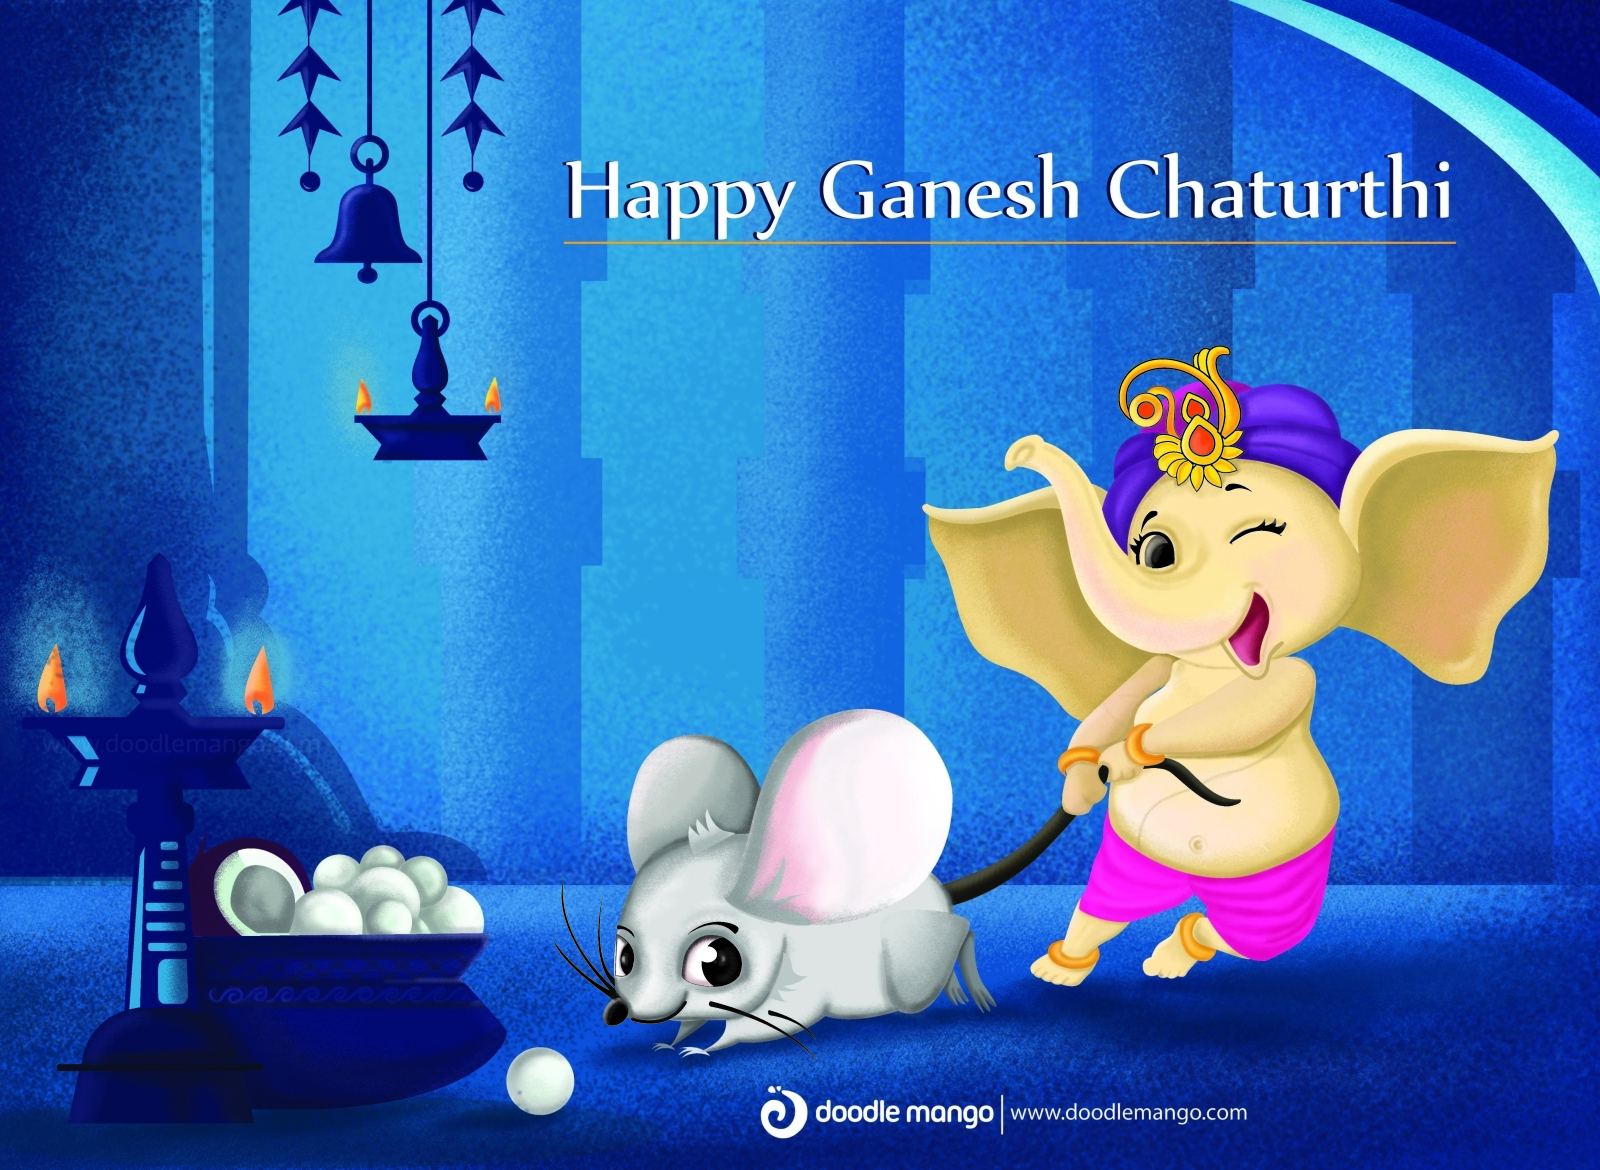 Ganesh Chaturthi Illustration by Doodle Mango on Dribbble